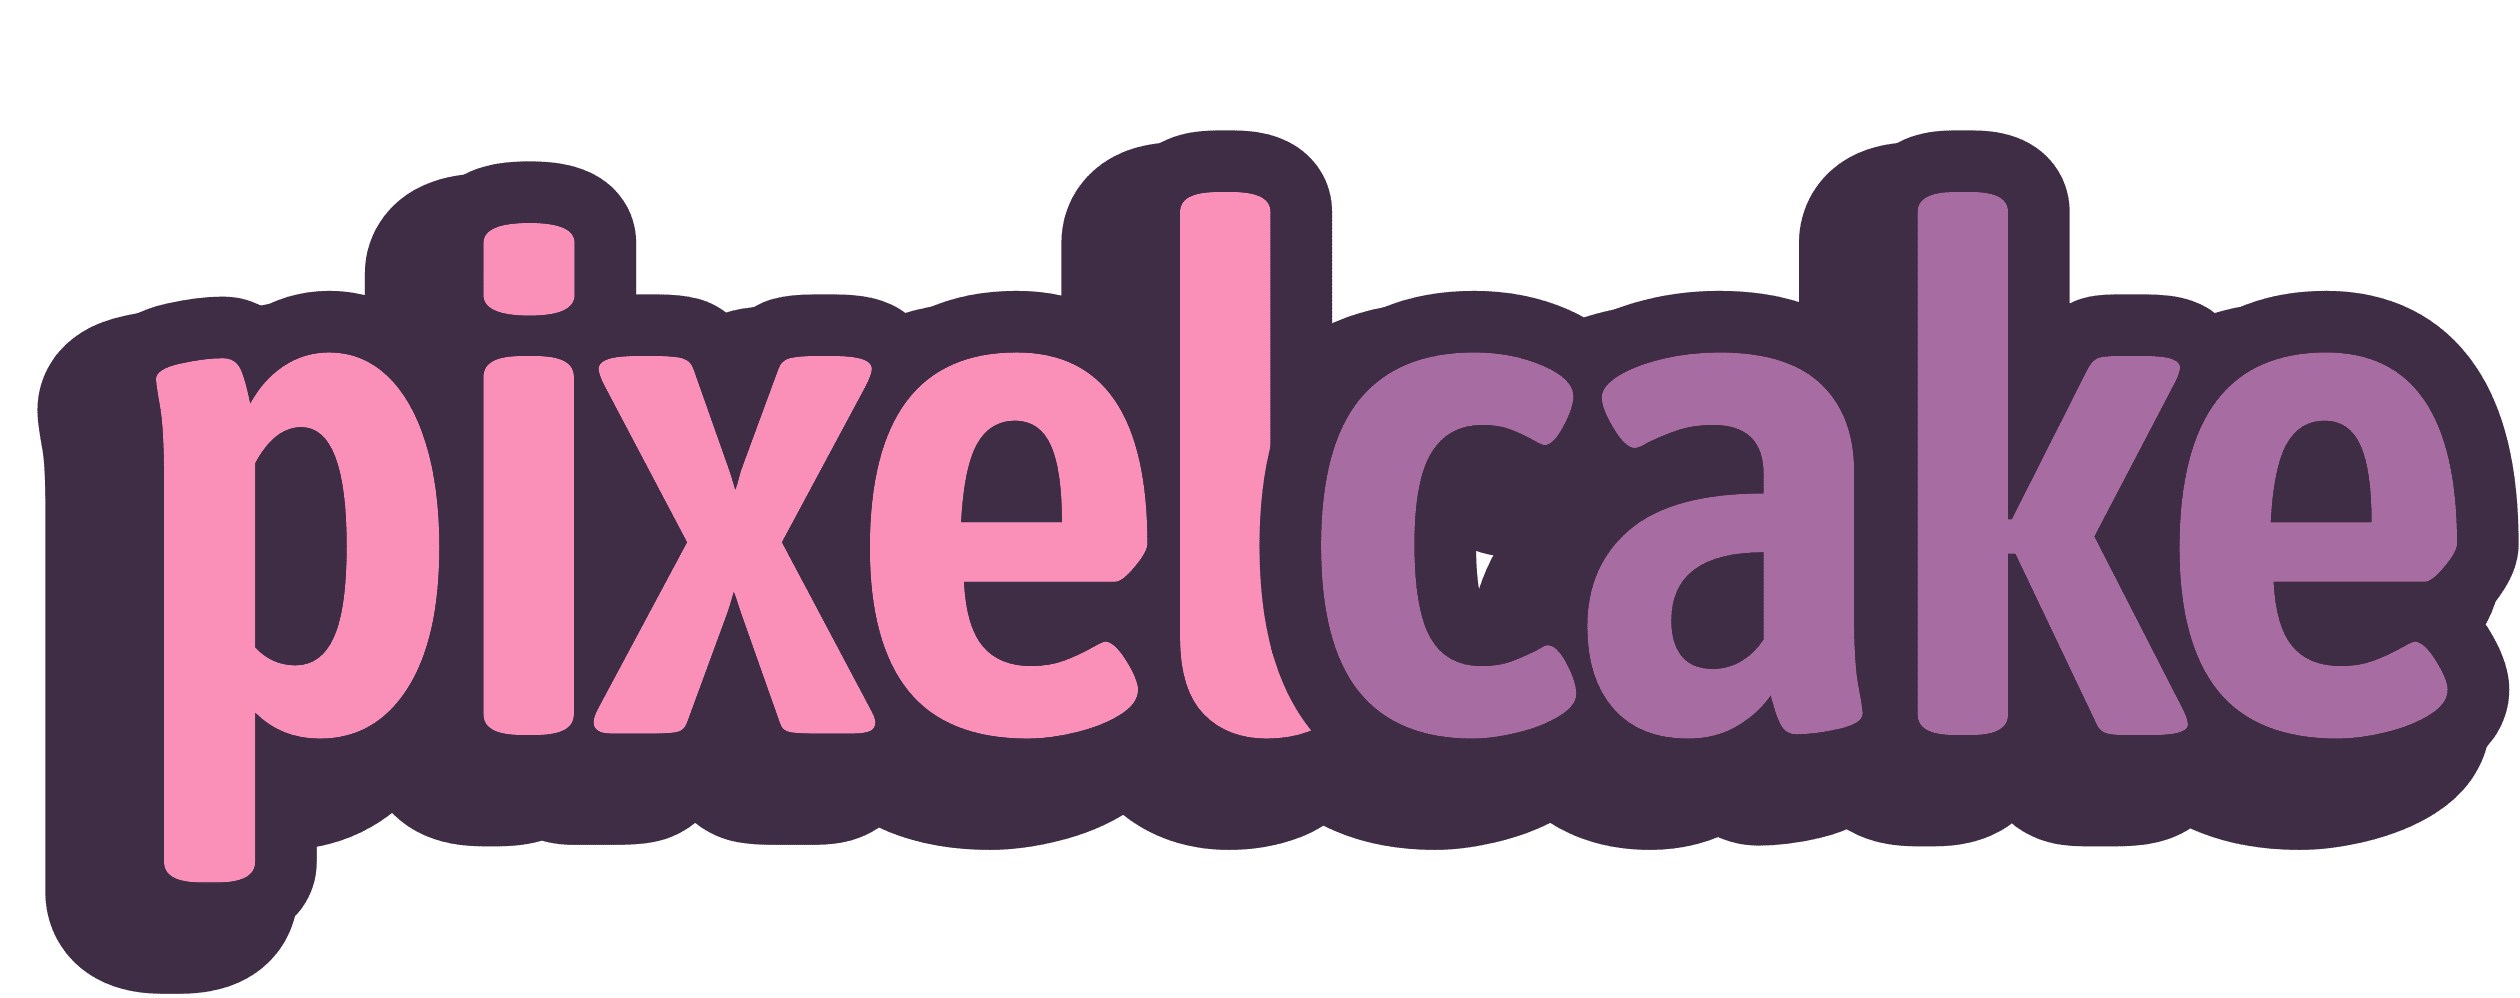 PixelCake